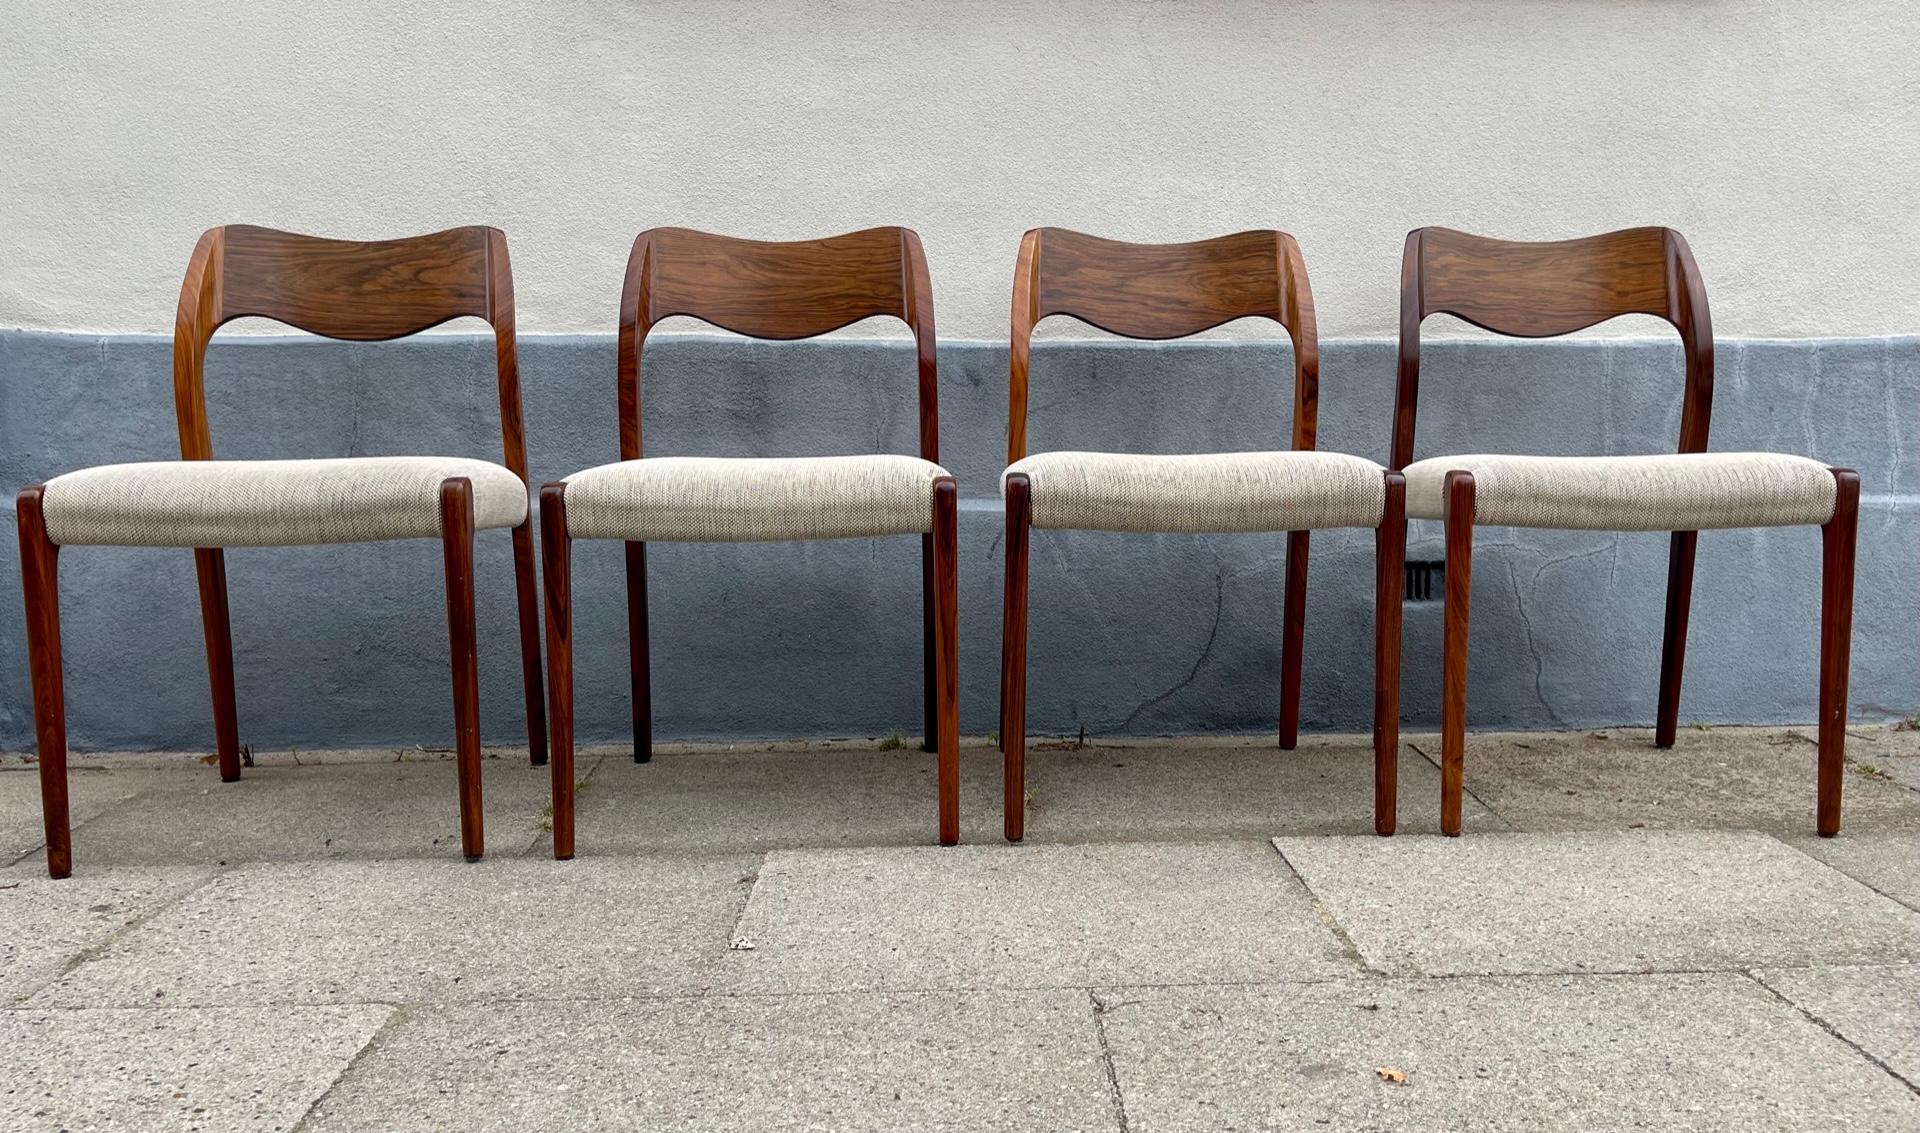 Un ensemble de 4 chaises de salle à manger des années 1960, modèle 71, conçu par Niels Otto Møller et fabriqué par J. L Møllers Møbelfabrik vers 1960-70. Configuration inhabituelle avec des dossiers en noyer. Récemment tapissé avec de la laine